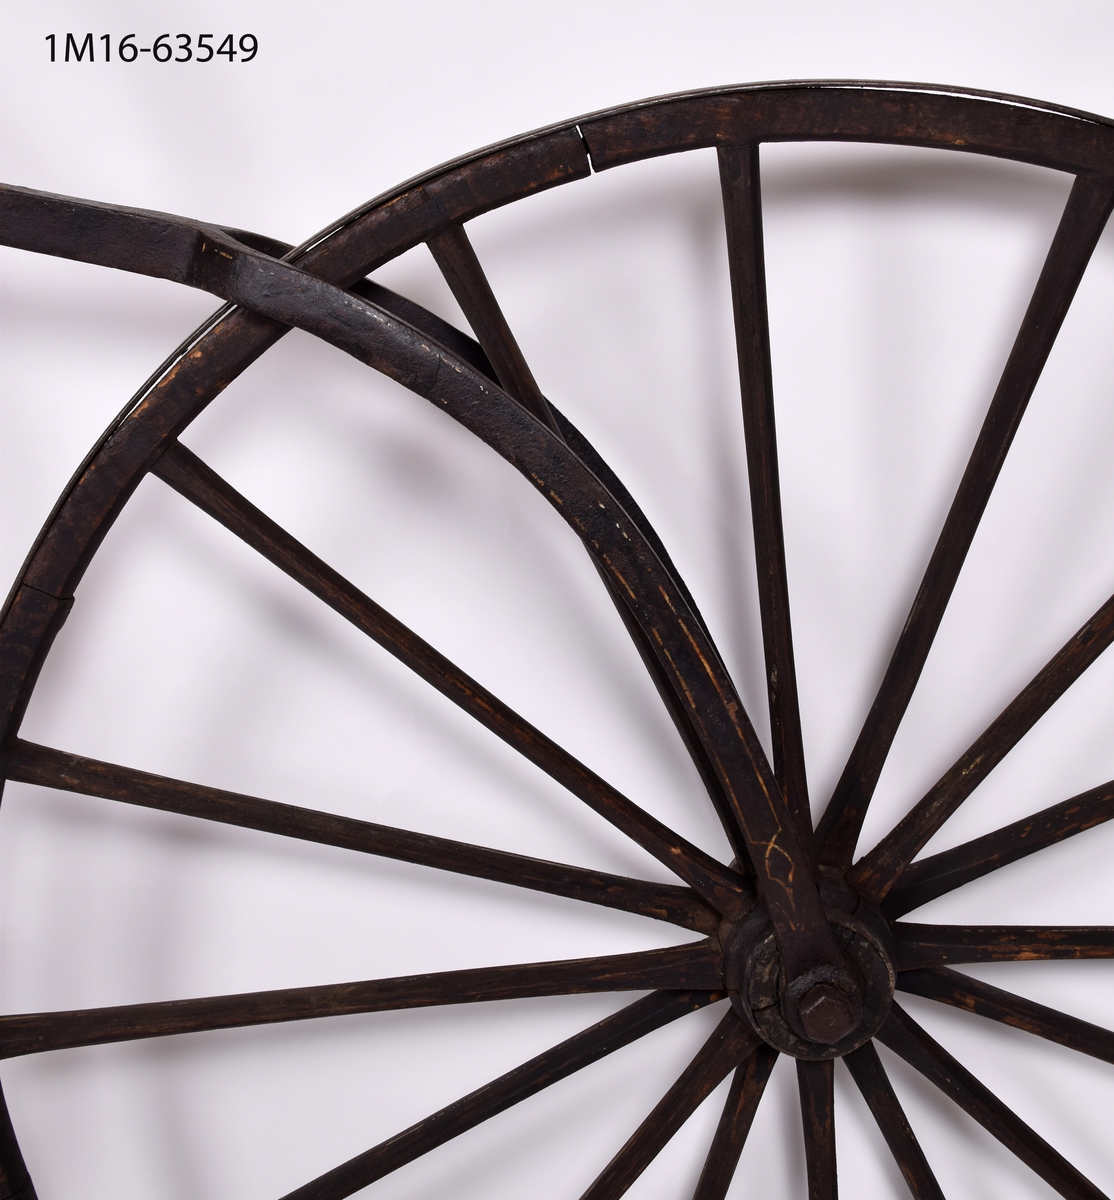 Cykel, gammal typ med högt framhjul. Tramporna är gjorda av trekantiga träbitar. Sadel av metall.